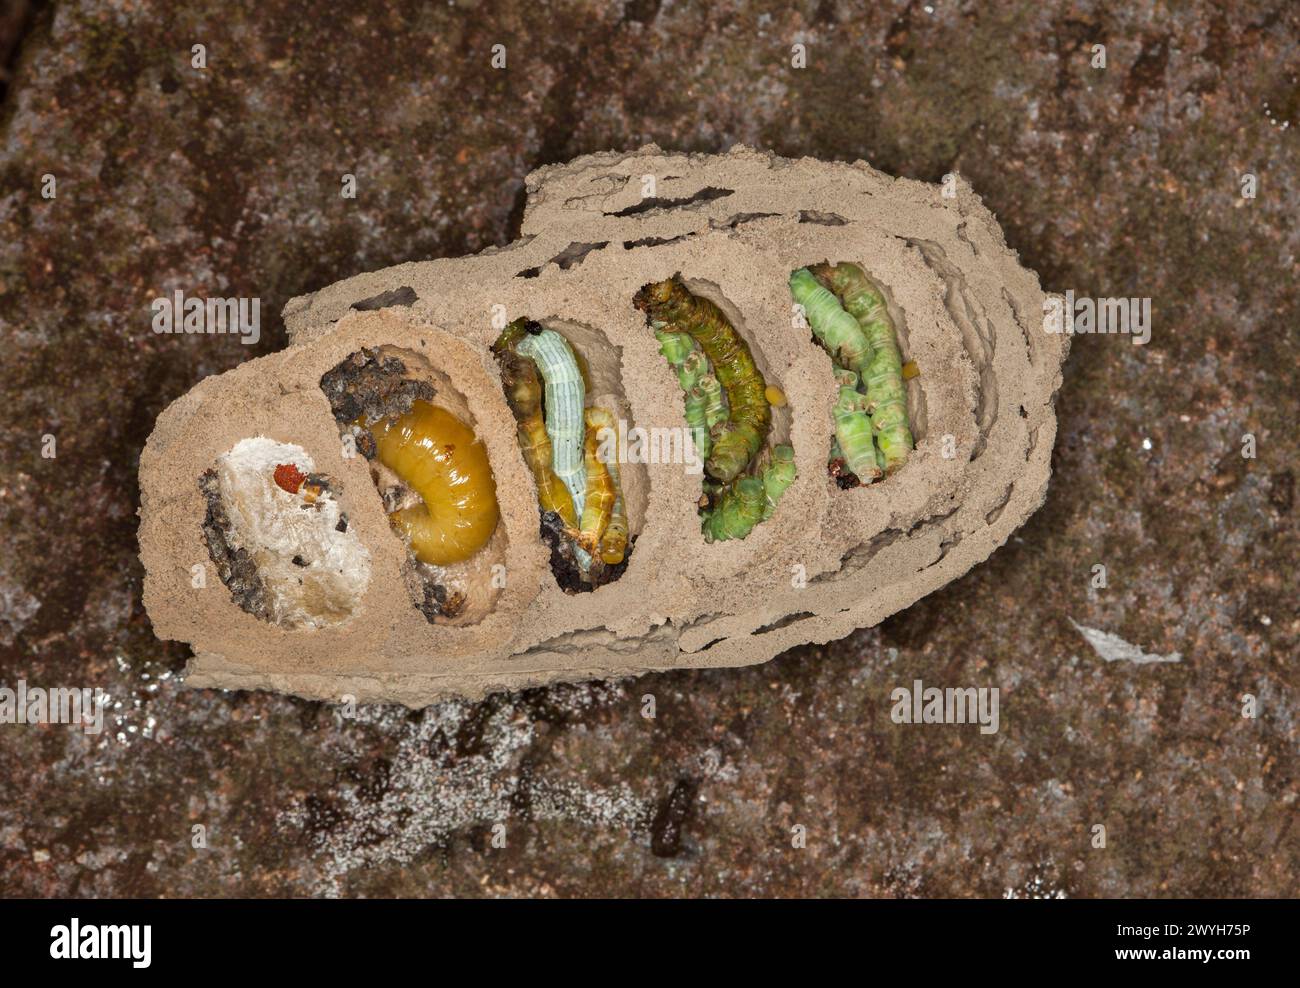 Image rare et étonnante de l'intérieur du nid de boue / guêpe potier montrant les oeufs d'insectes, chenilles et larves à divers stades de métamorphose Banque D'Images